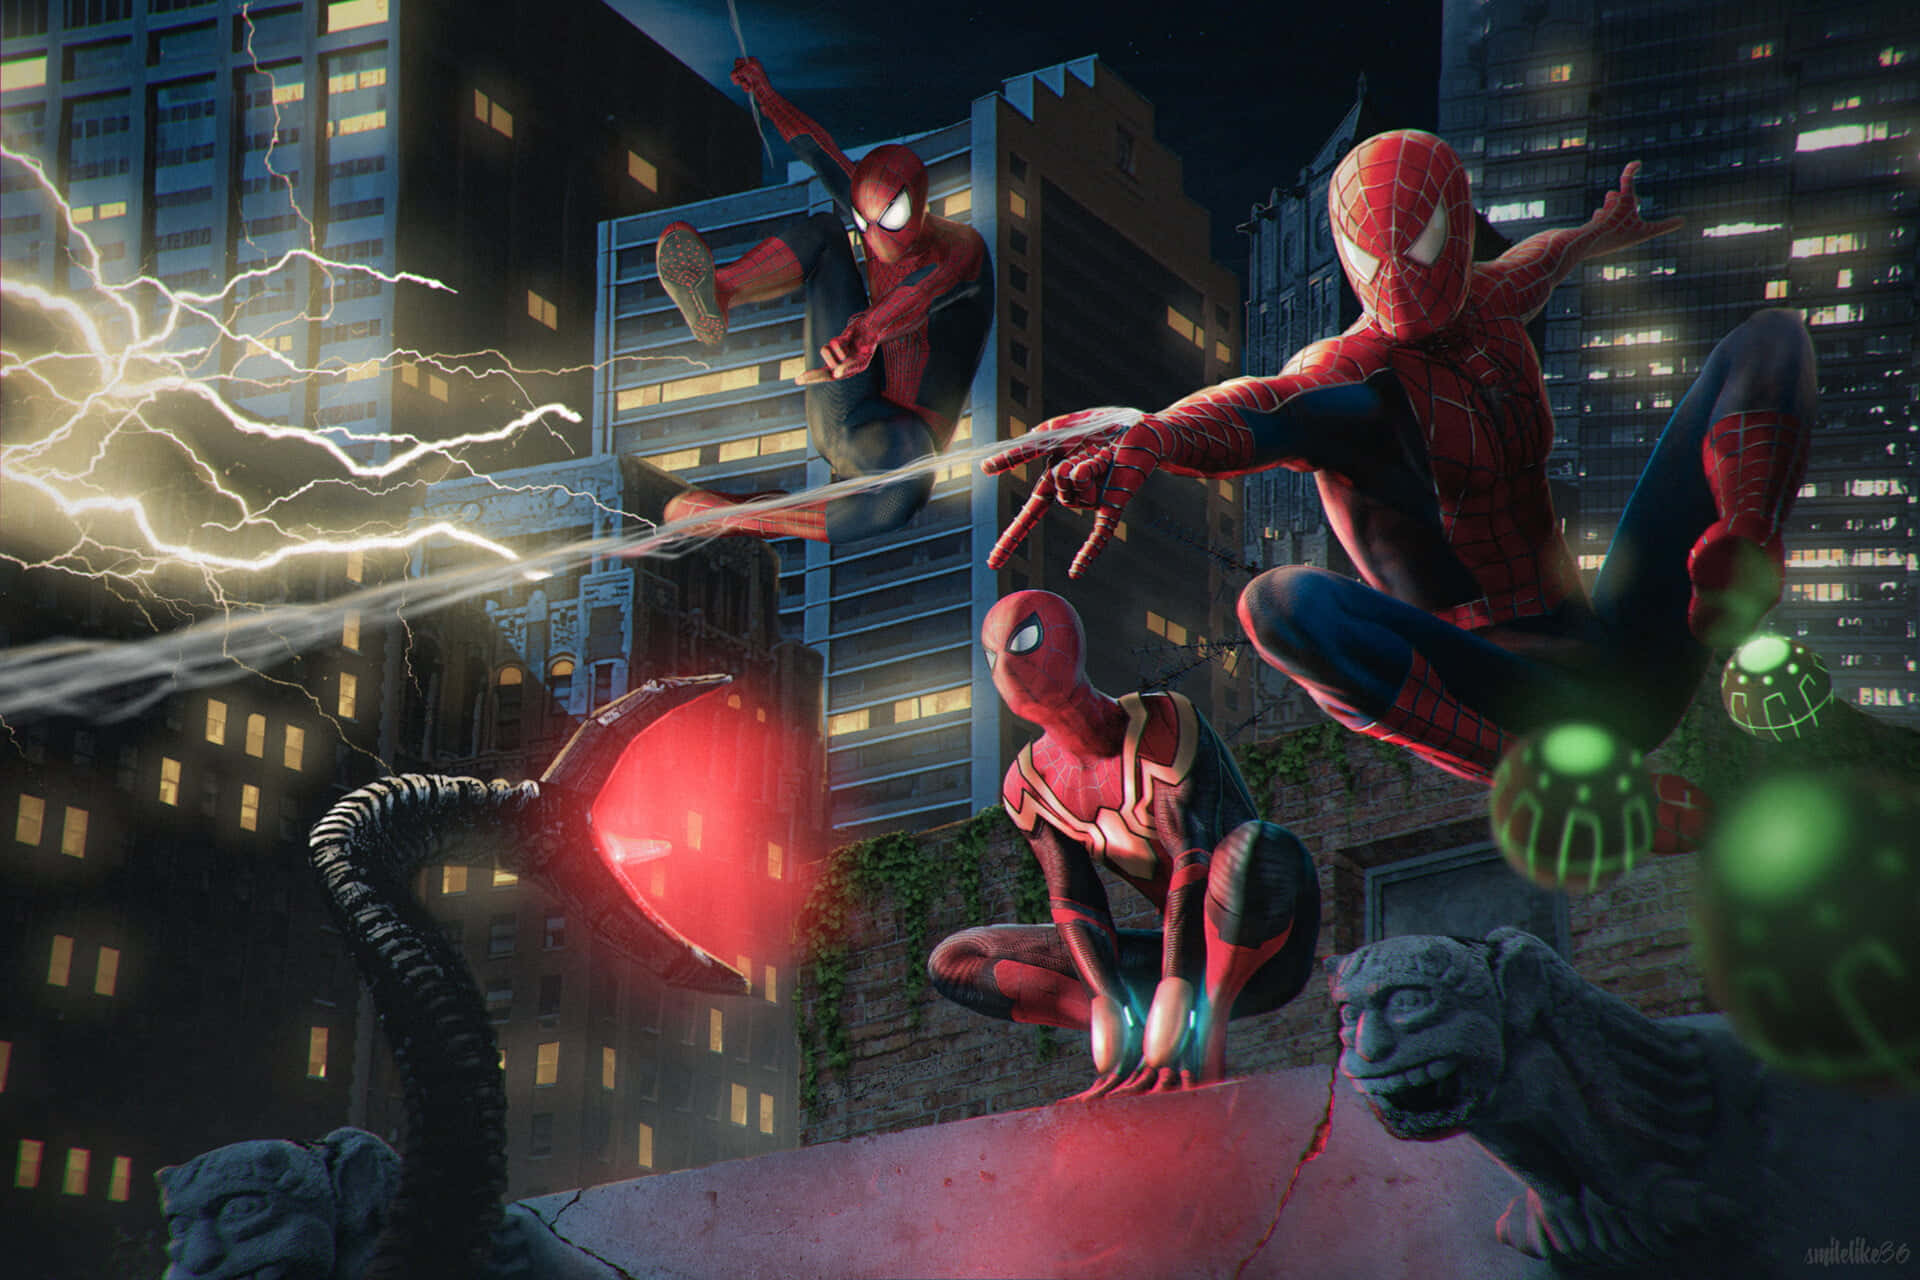 "Intense Spider-Man No Way Home scene showcasing Spider-Man against a dark city backdrop."